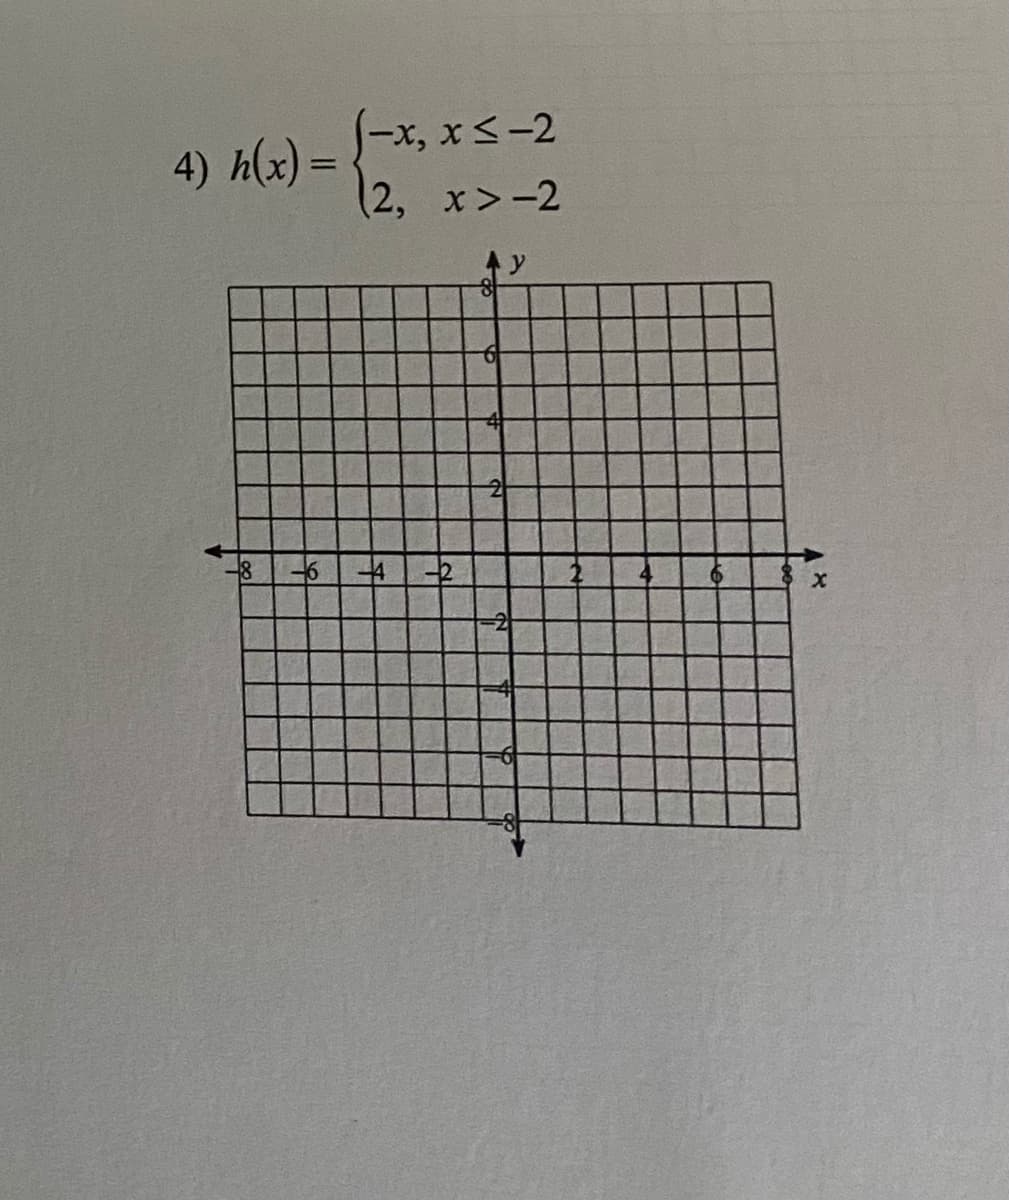 リ-x, x<-2
4) h(x) =
(2, x>-2
16
41セ
